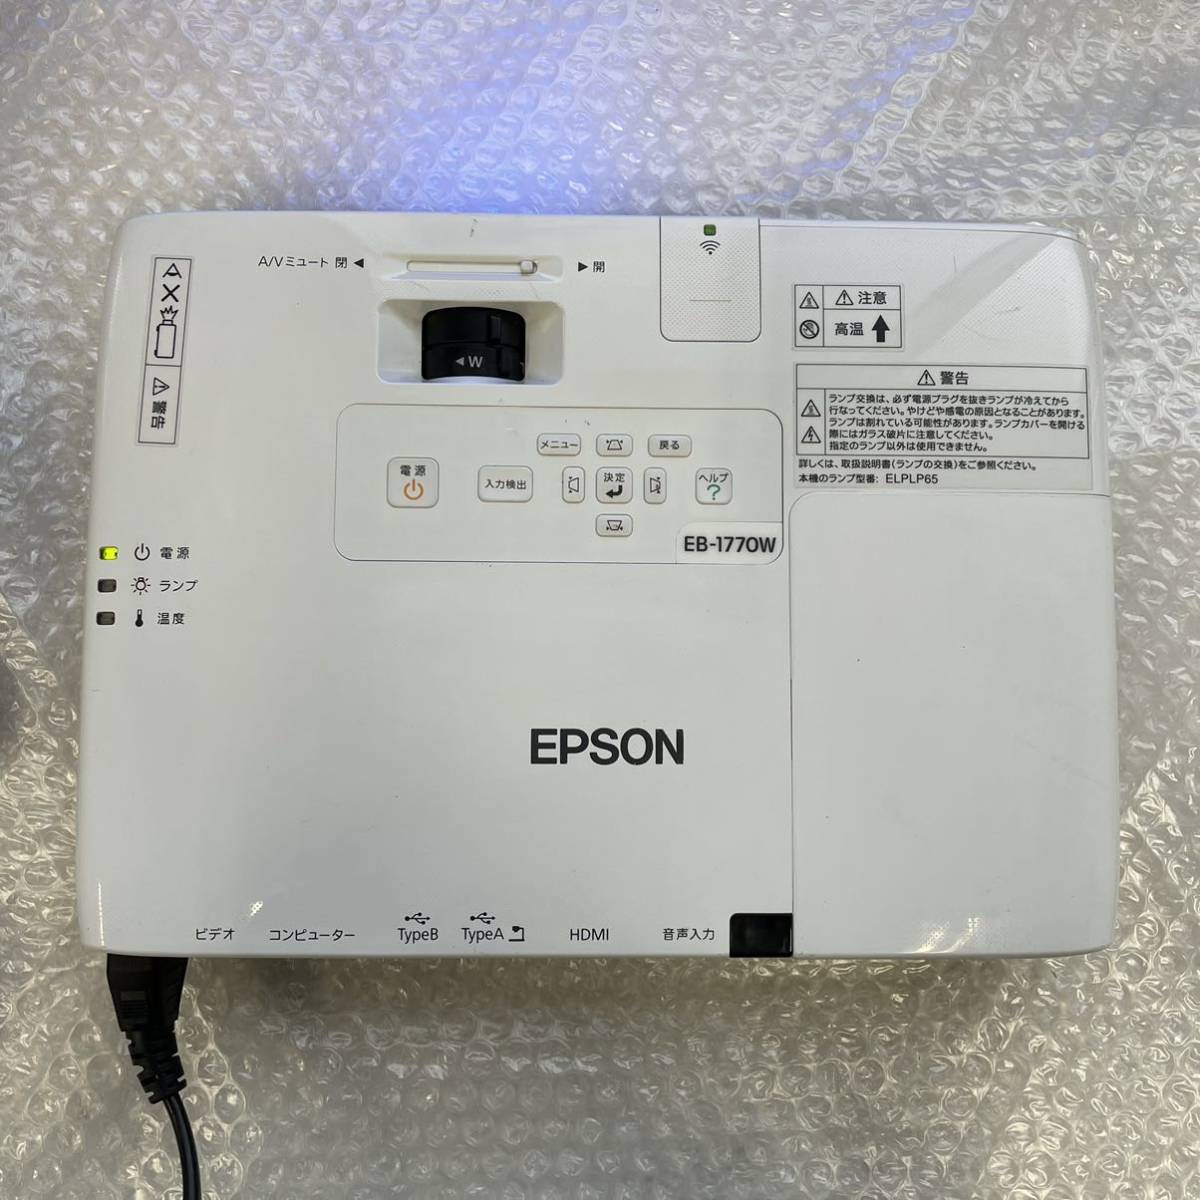 36％割引【ネット限定】 EPSON エプソン 液晶 プロジェクター EB-1770W H362D プロジェクター  テレビ/映像機器-SOLCALOJA.MED.EC